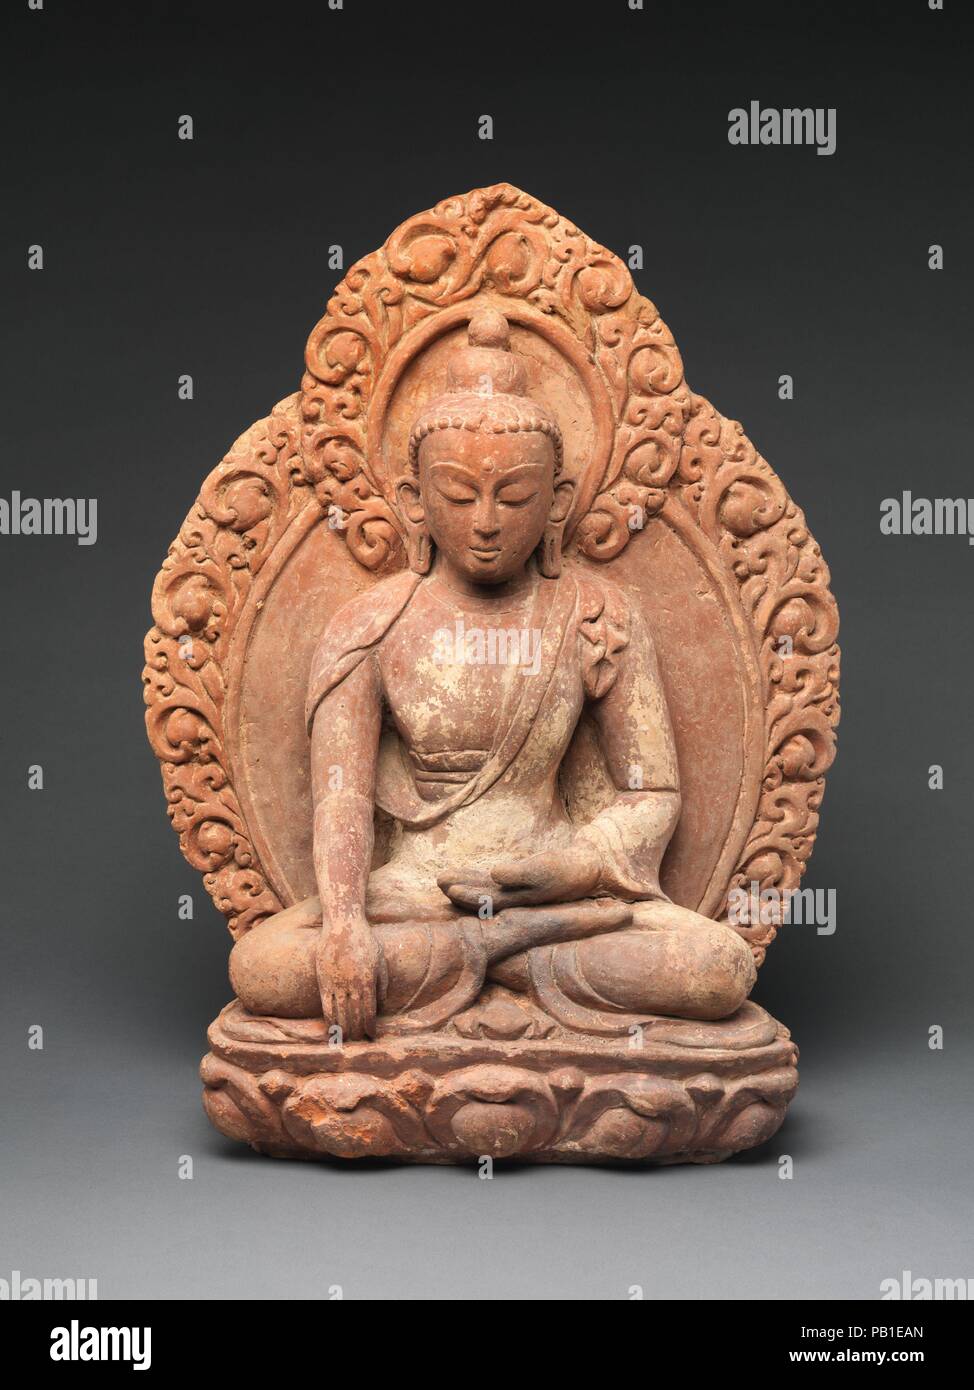 Akshobhya, il Buddha di orientali Pura Terra. Cultura: il Nepal. Dimensioni: H. 20 a. (50,8 cm); W. 14 3/4 in. (37 5 cm); D. 6 1/2 in. (16,5 cm). Data: XVI-XVII secolo. Il Buddha raggiunge la sua mano destra verso il basso in bhumisparsha mudra, segnando il momento in cui lo storico Buddha Shakyamuni chiamato la dea terra a testimoniare la sua resistenza alle forze di Mara, subito prima della sua sperimentando illuminismo. In esoterica tradizione buddista, questa iconografia è associato con Akshobhya, Buddha cosmico dell'Est. I boccioli di loto abbellendo la mandorla e il fiore aperto che serve Foto Stock